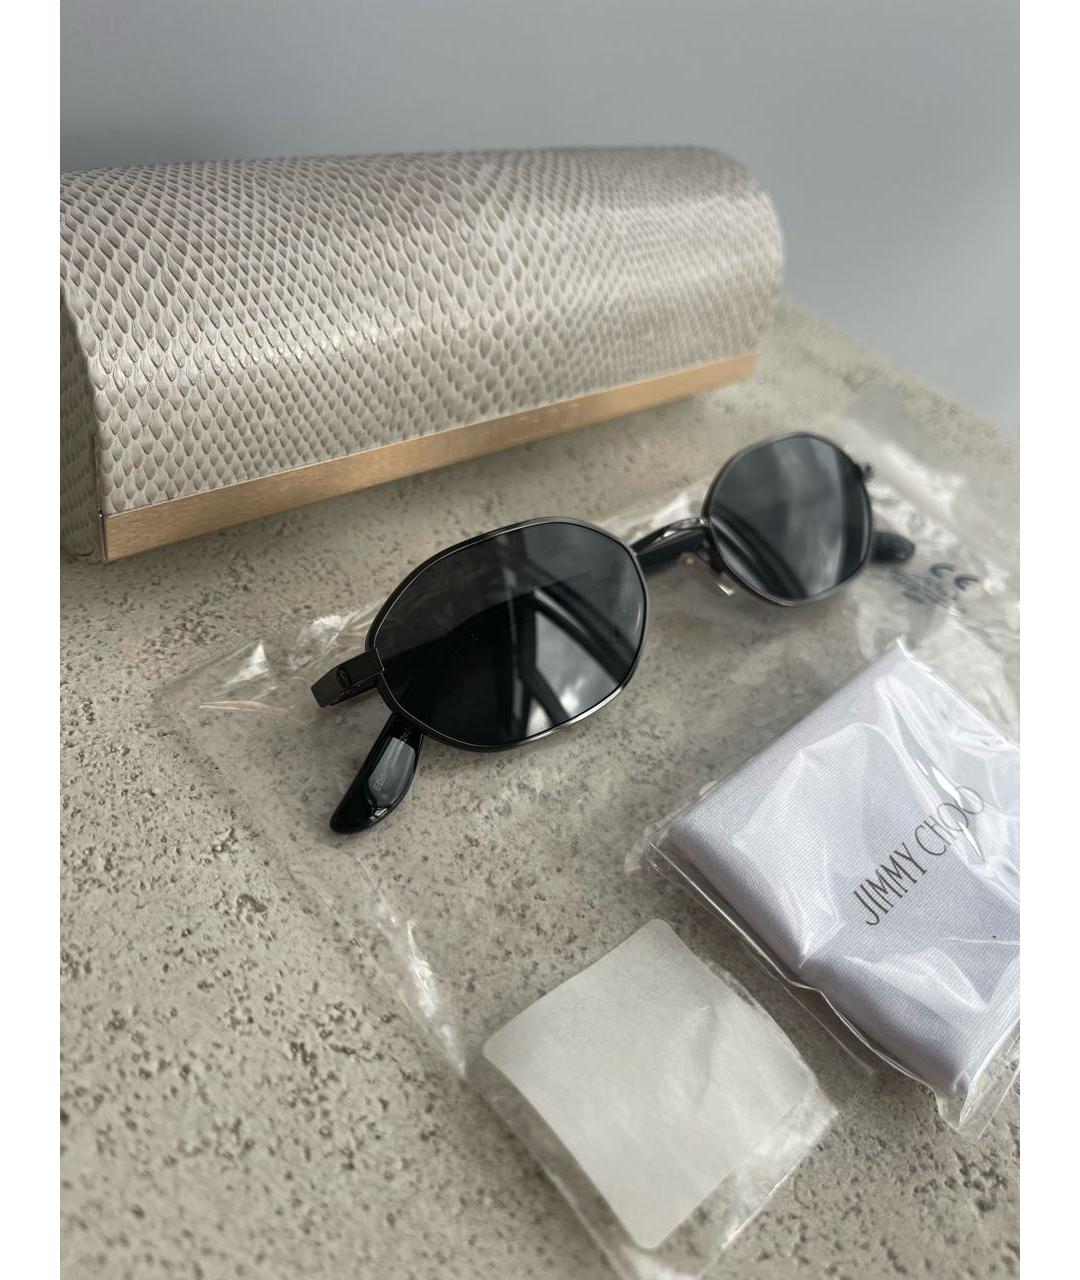 JIMMY CHOO Черные металлические солнцезащитные очки, фото 6